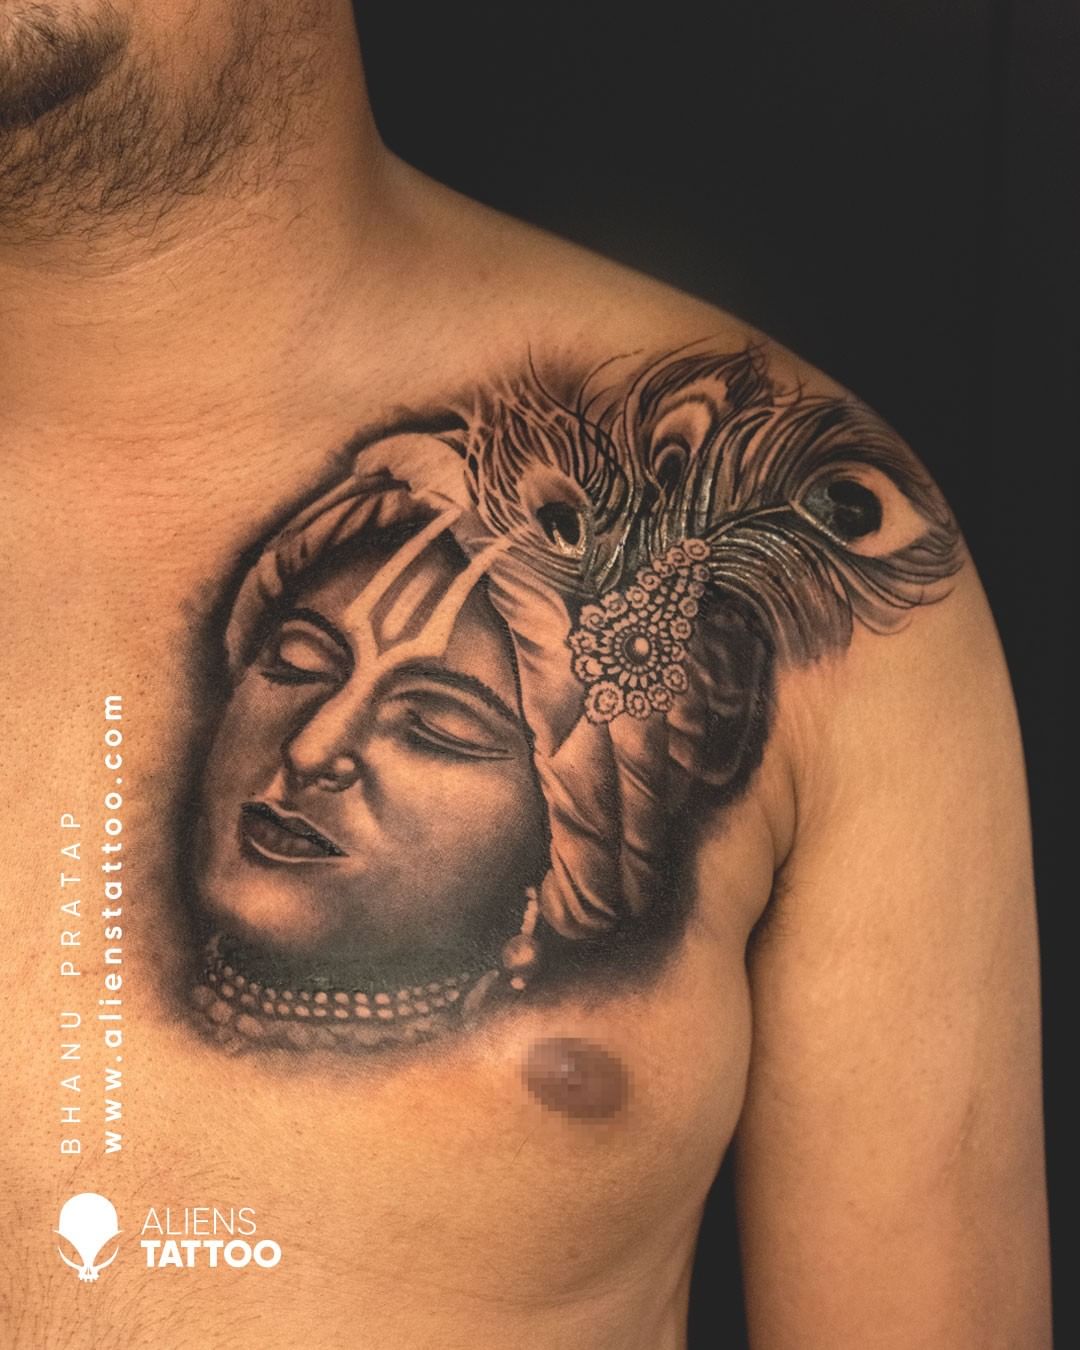 Krishna tattoo studio  𝙆𝙧𝙞𝙨𝙝𝙣𝙖𝙏𝙖𝙩𝙩𝙤𝙤𝙎𝙩𝙪𝙙𝙞𝙤  Facebook